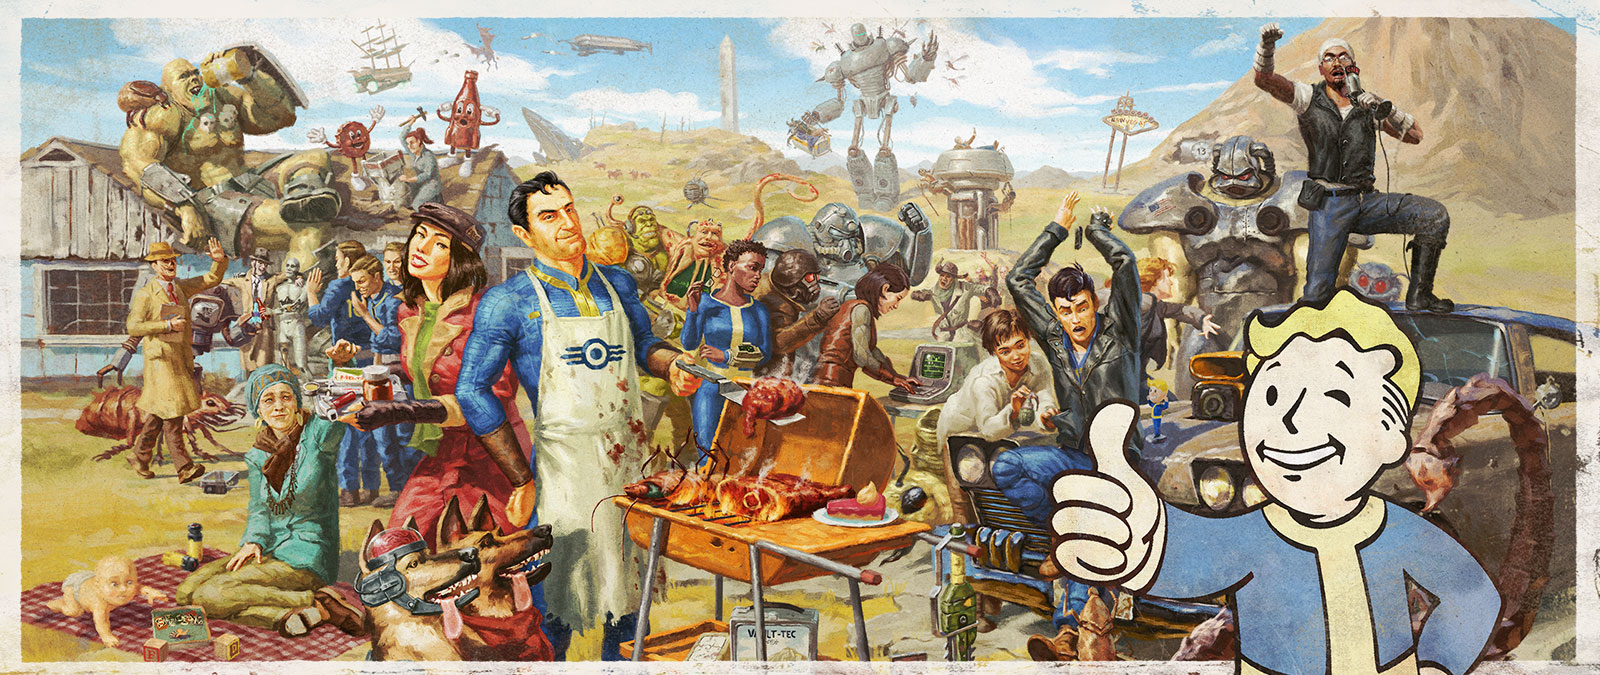 Plusieurs personnages de la franchise Fallout se rassemblent pour un barbecue en famille.